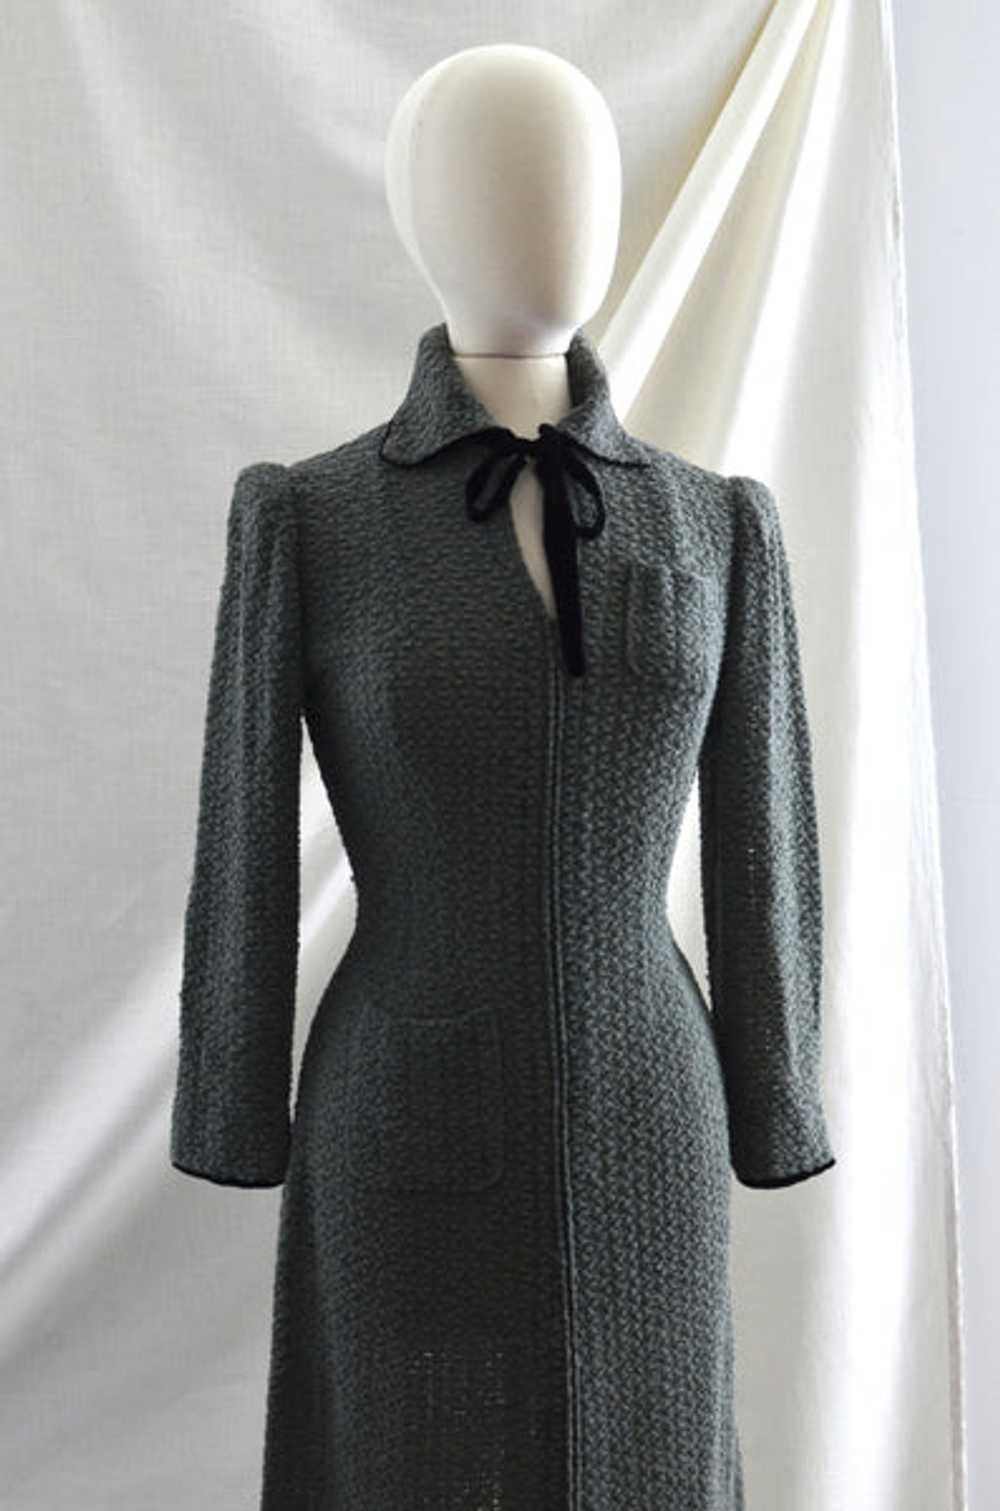 Vintage 1930's Misted Green Knit Dress - image 3